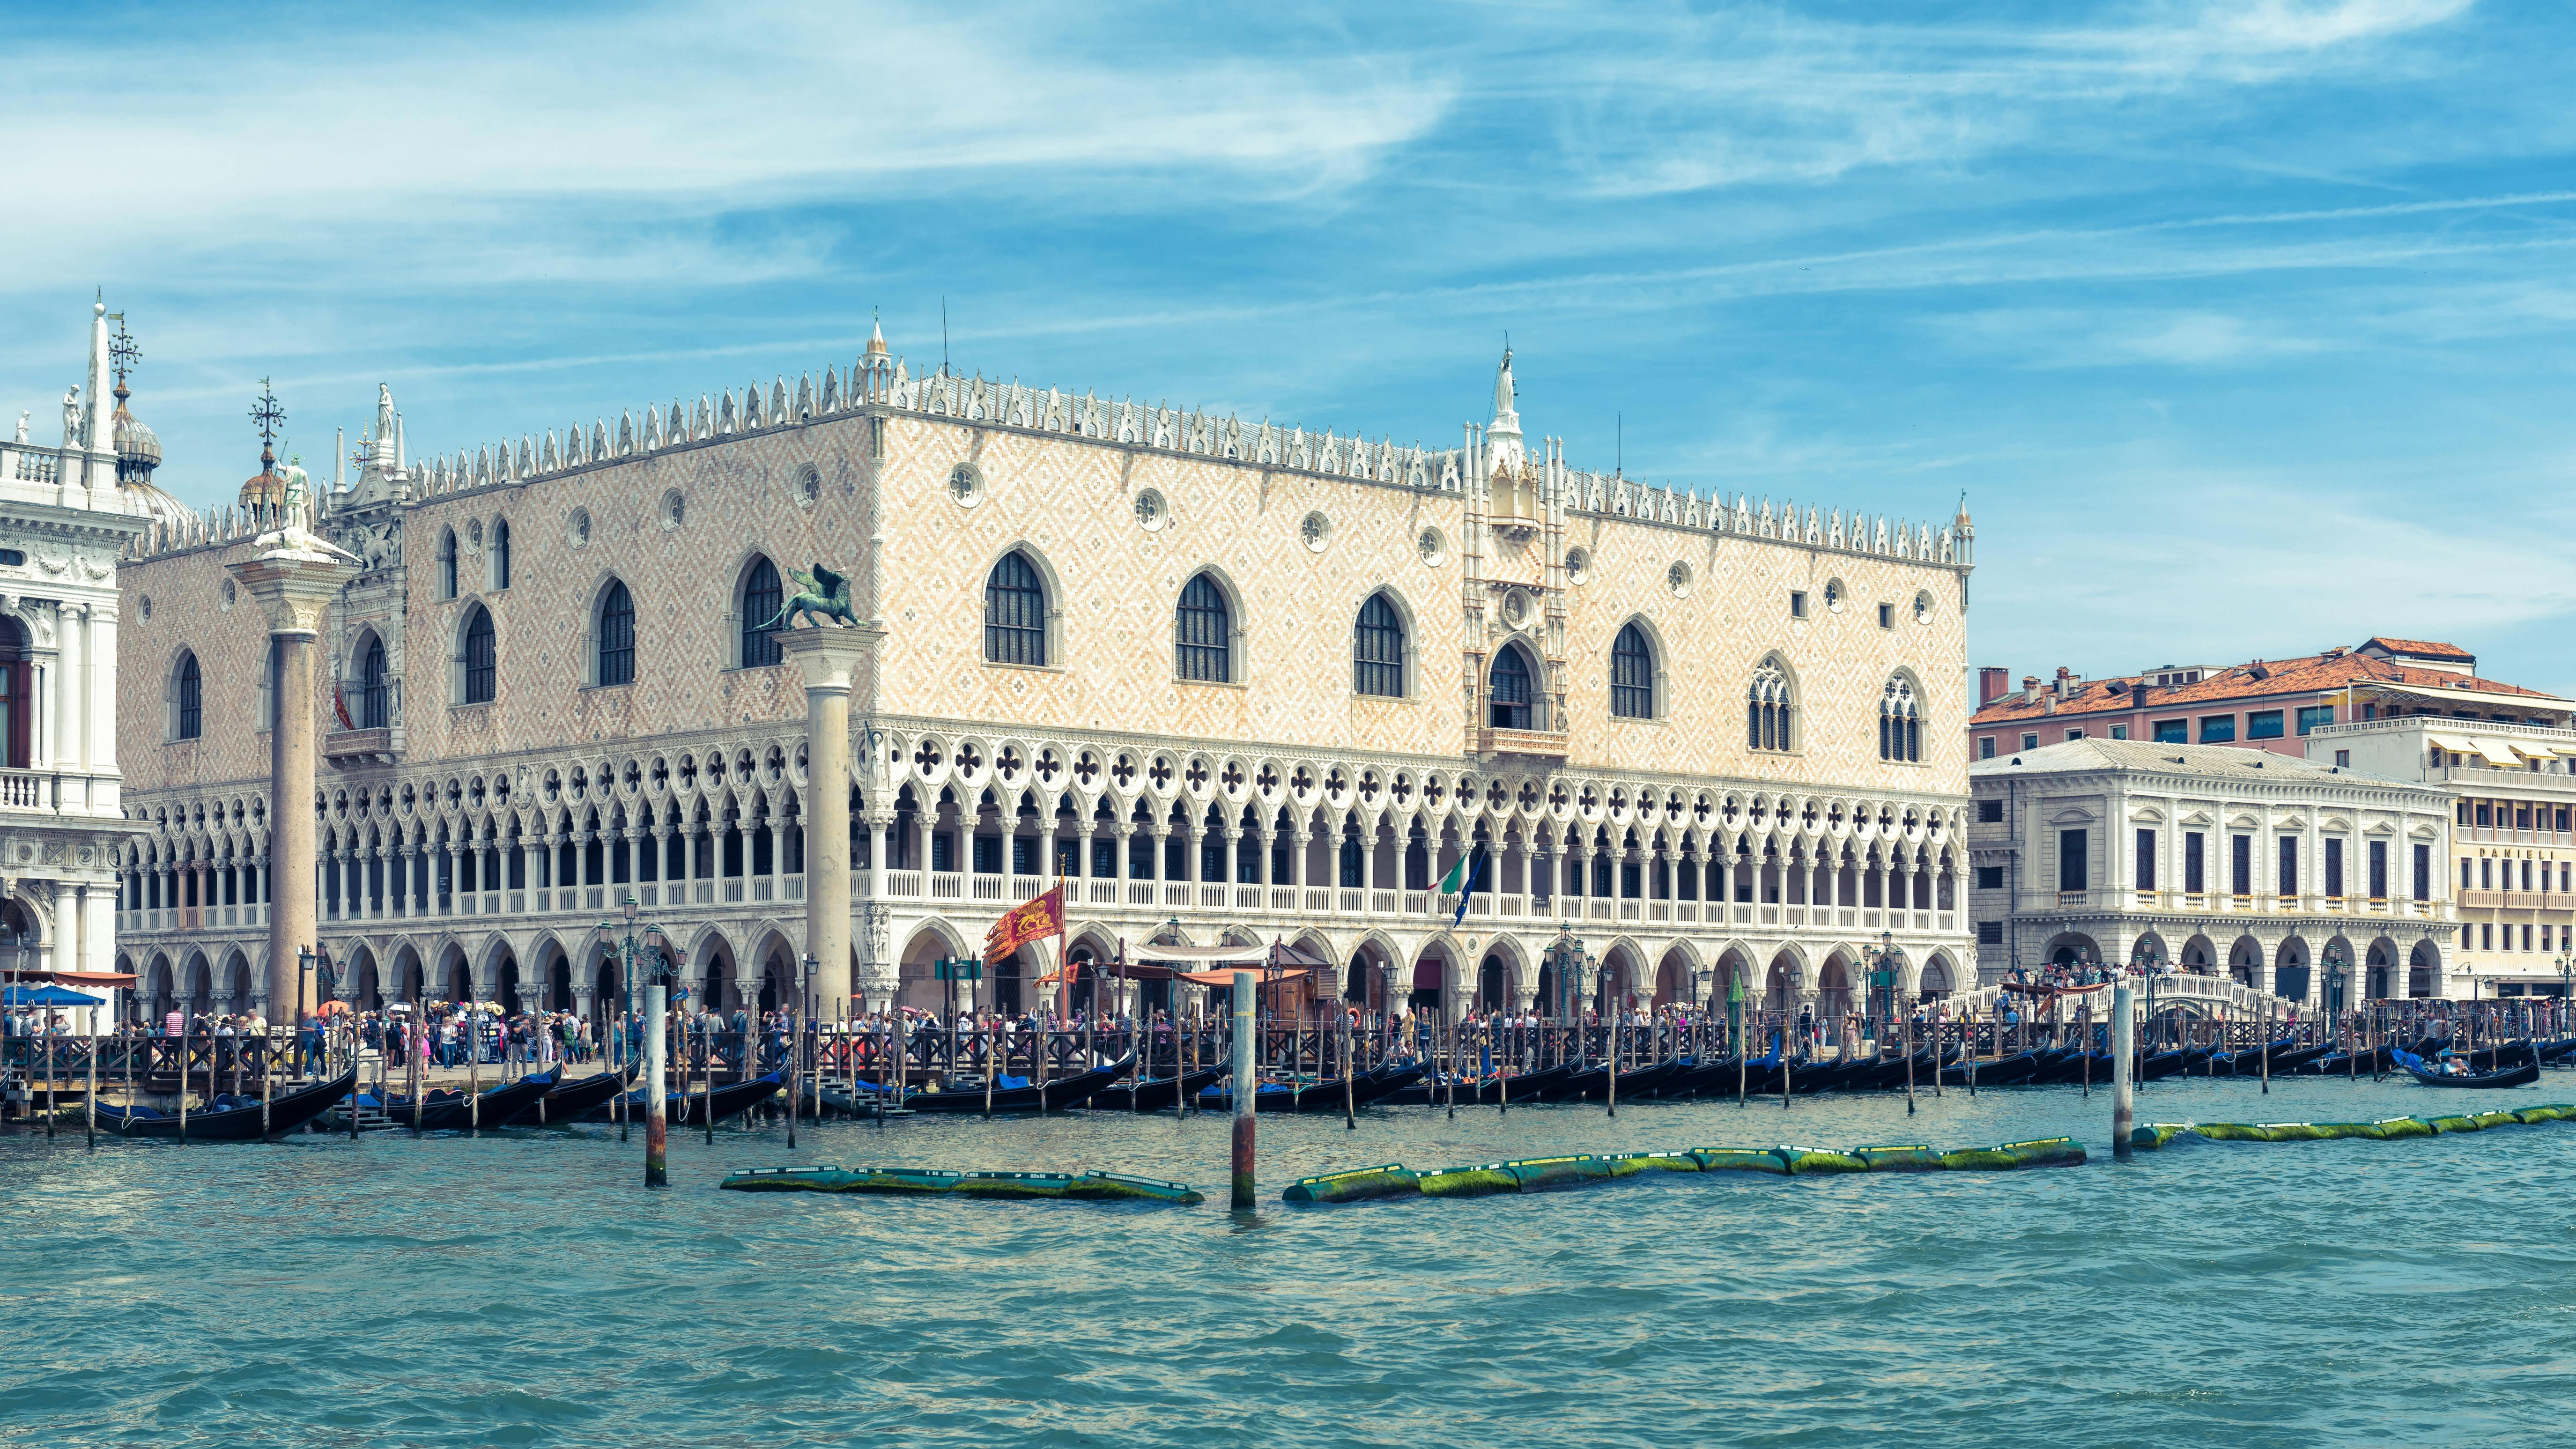 Recorrido a pie por lo mejor de Venecia con el Palacio Ducal y la basílica de San Marcos